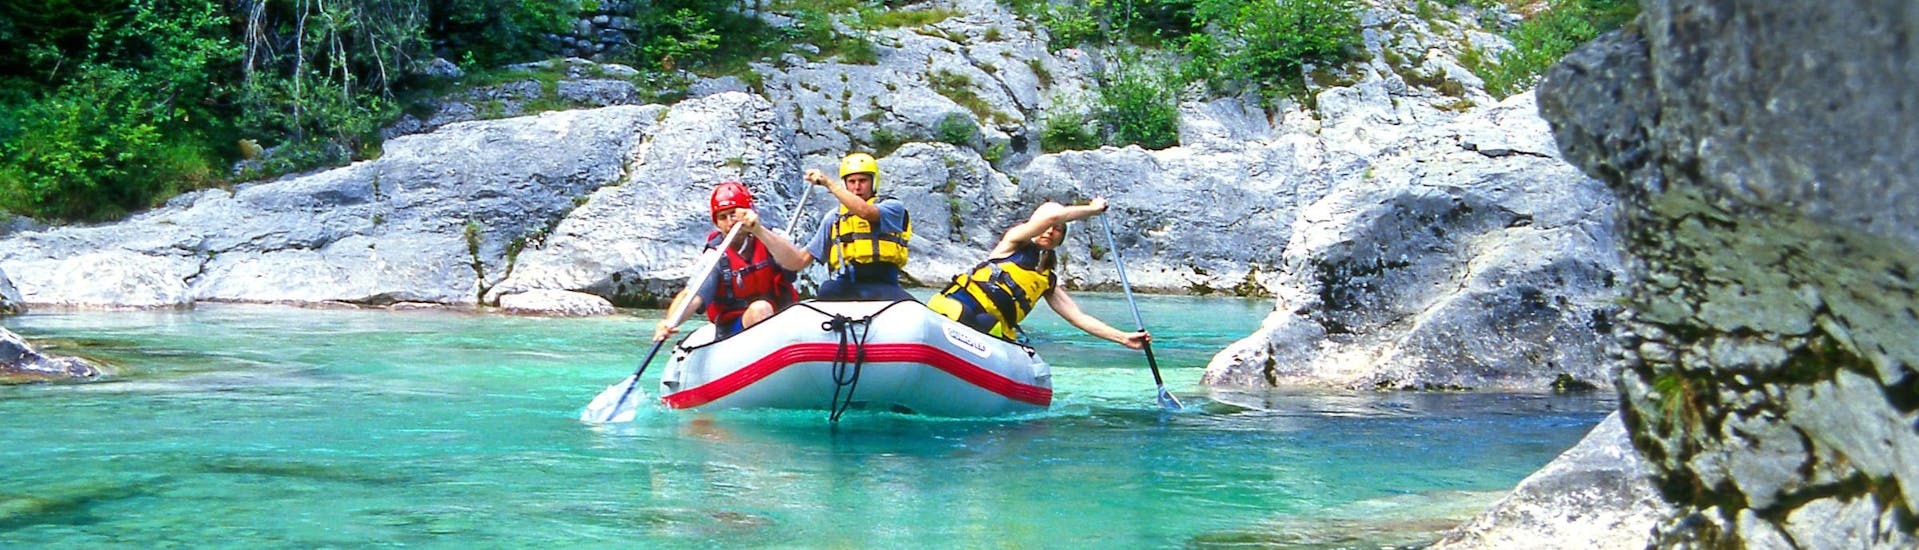 Un grupo de jóvenes disfruta haciendo rafting en Soča, popular destino para los deportes de agua y de aventura como el rafting y el descenso de barrancos.  